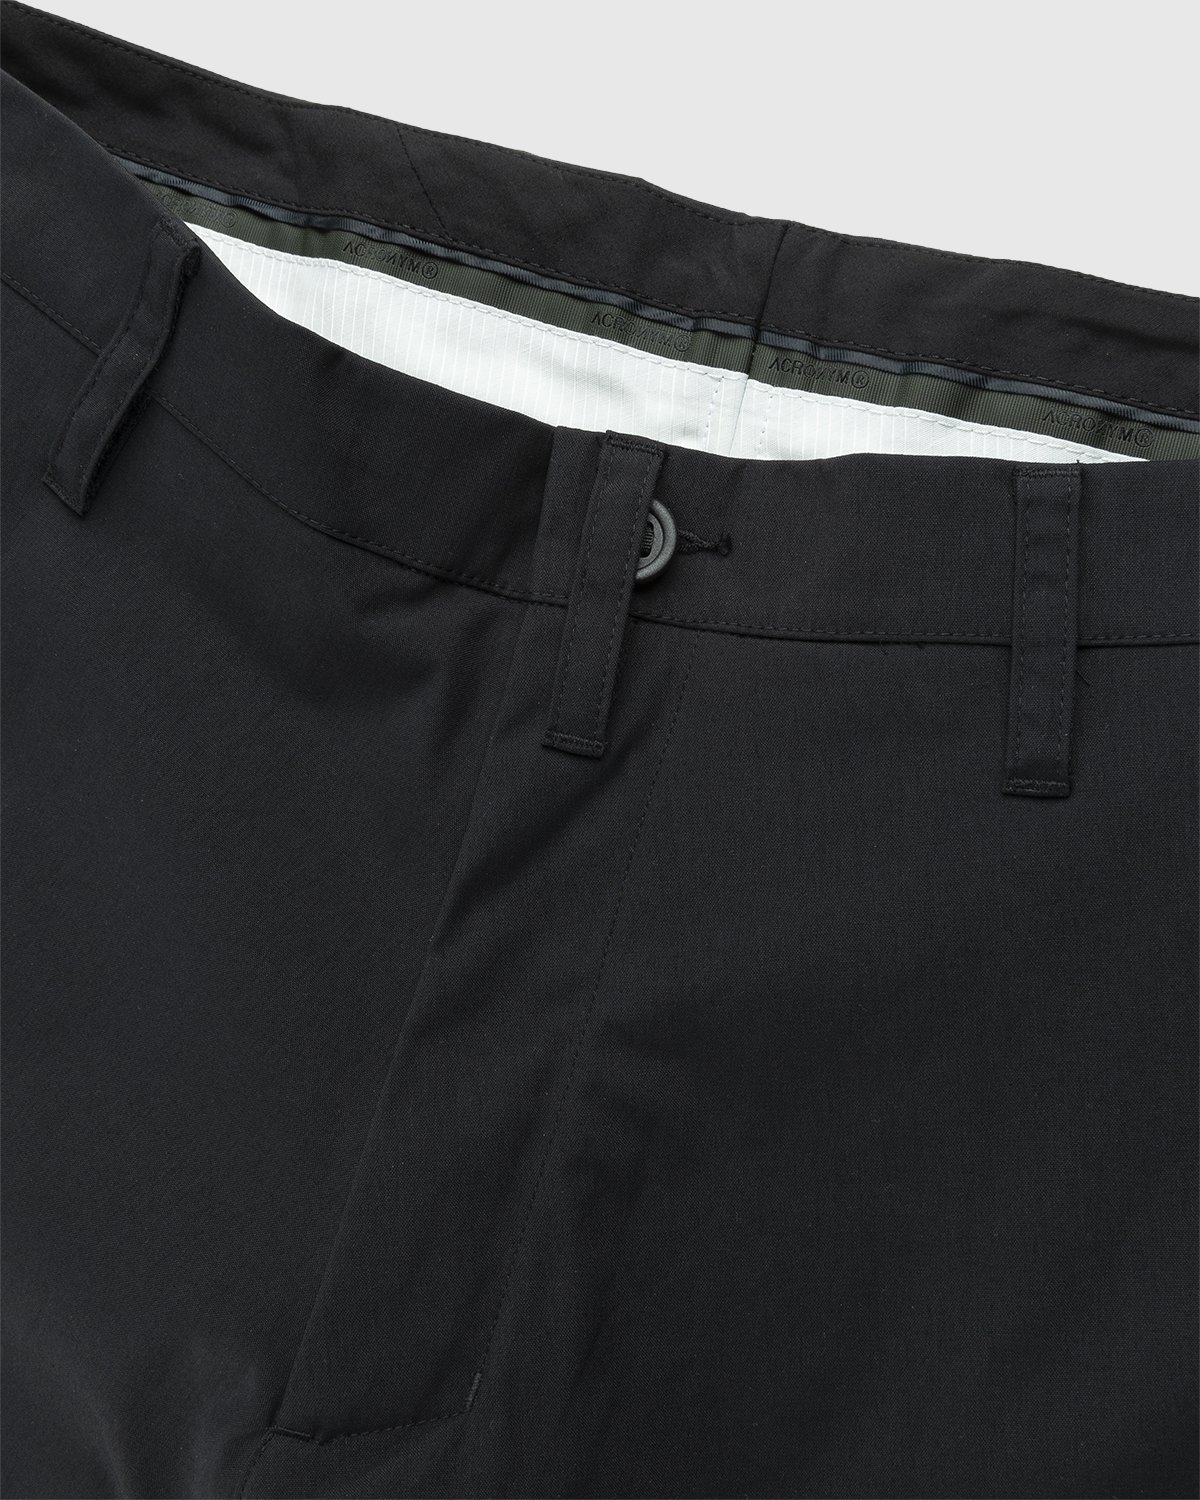 ACRONYM - P10-E Pant Black - Clothing - Black - Image 3